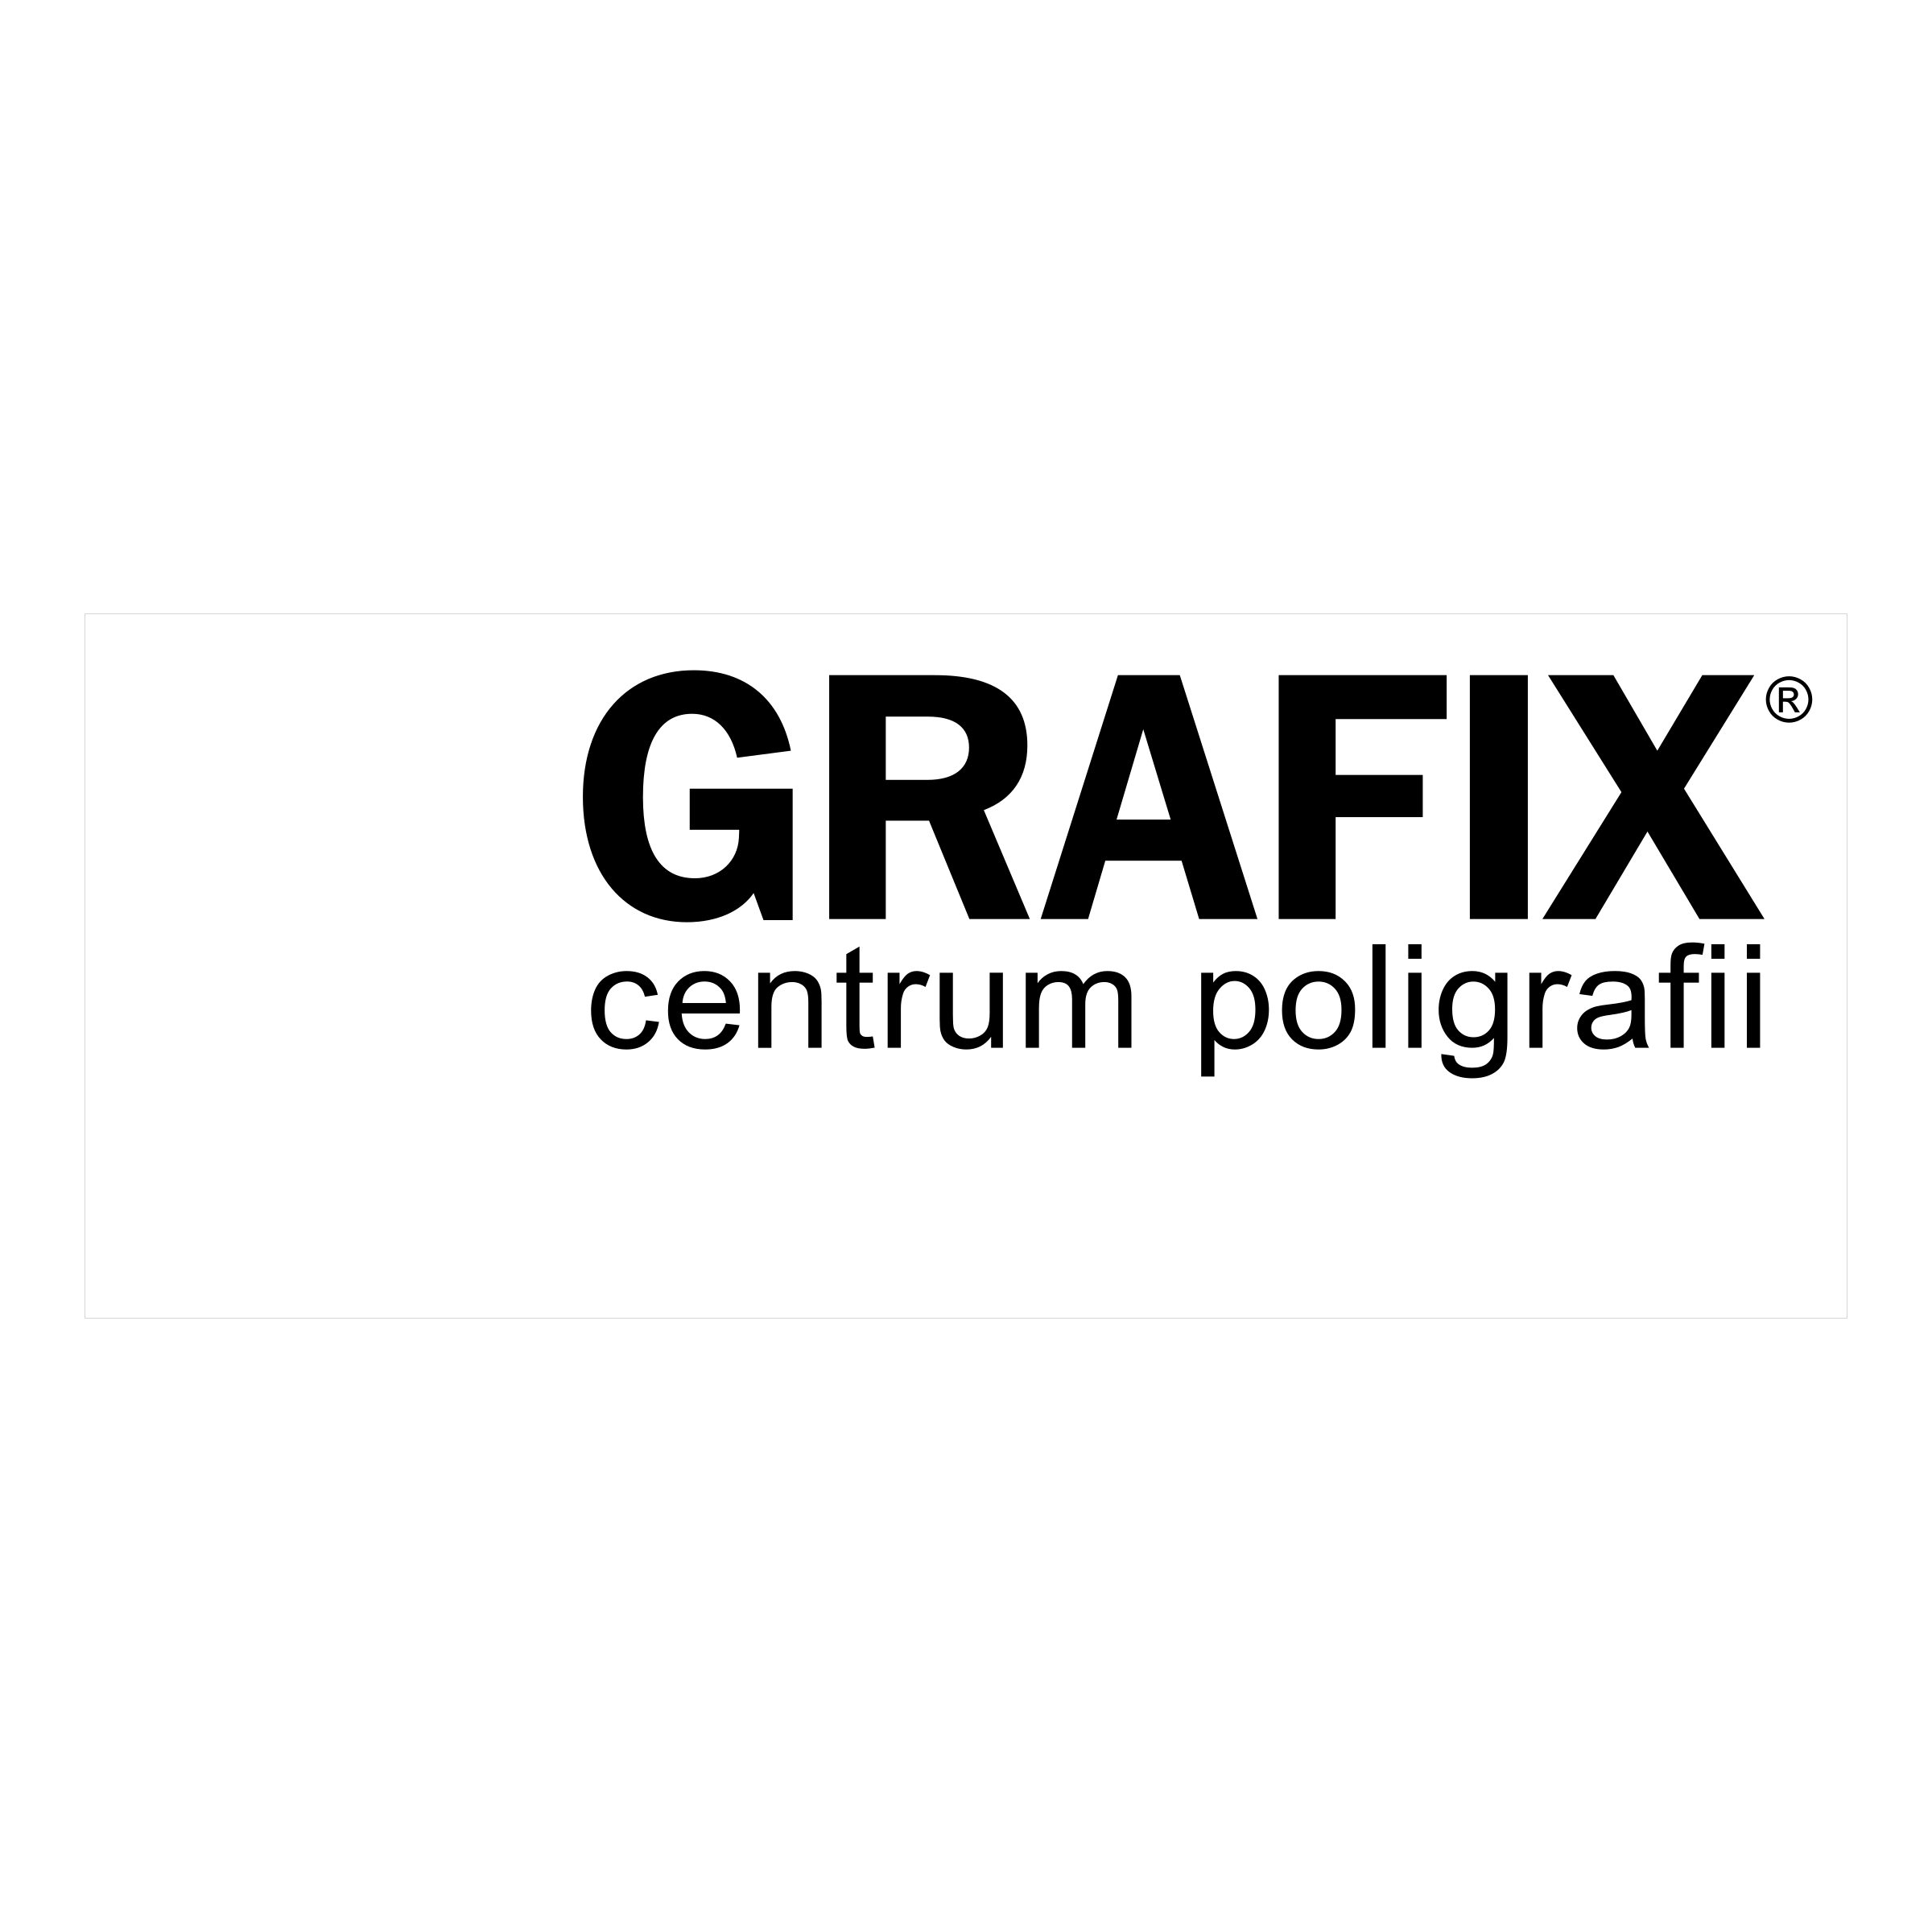 Grafix Logo - Grafix Logo PNG Transparent & SVG Vector